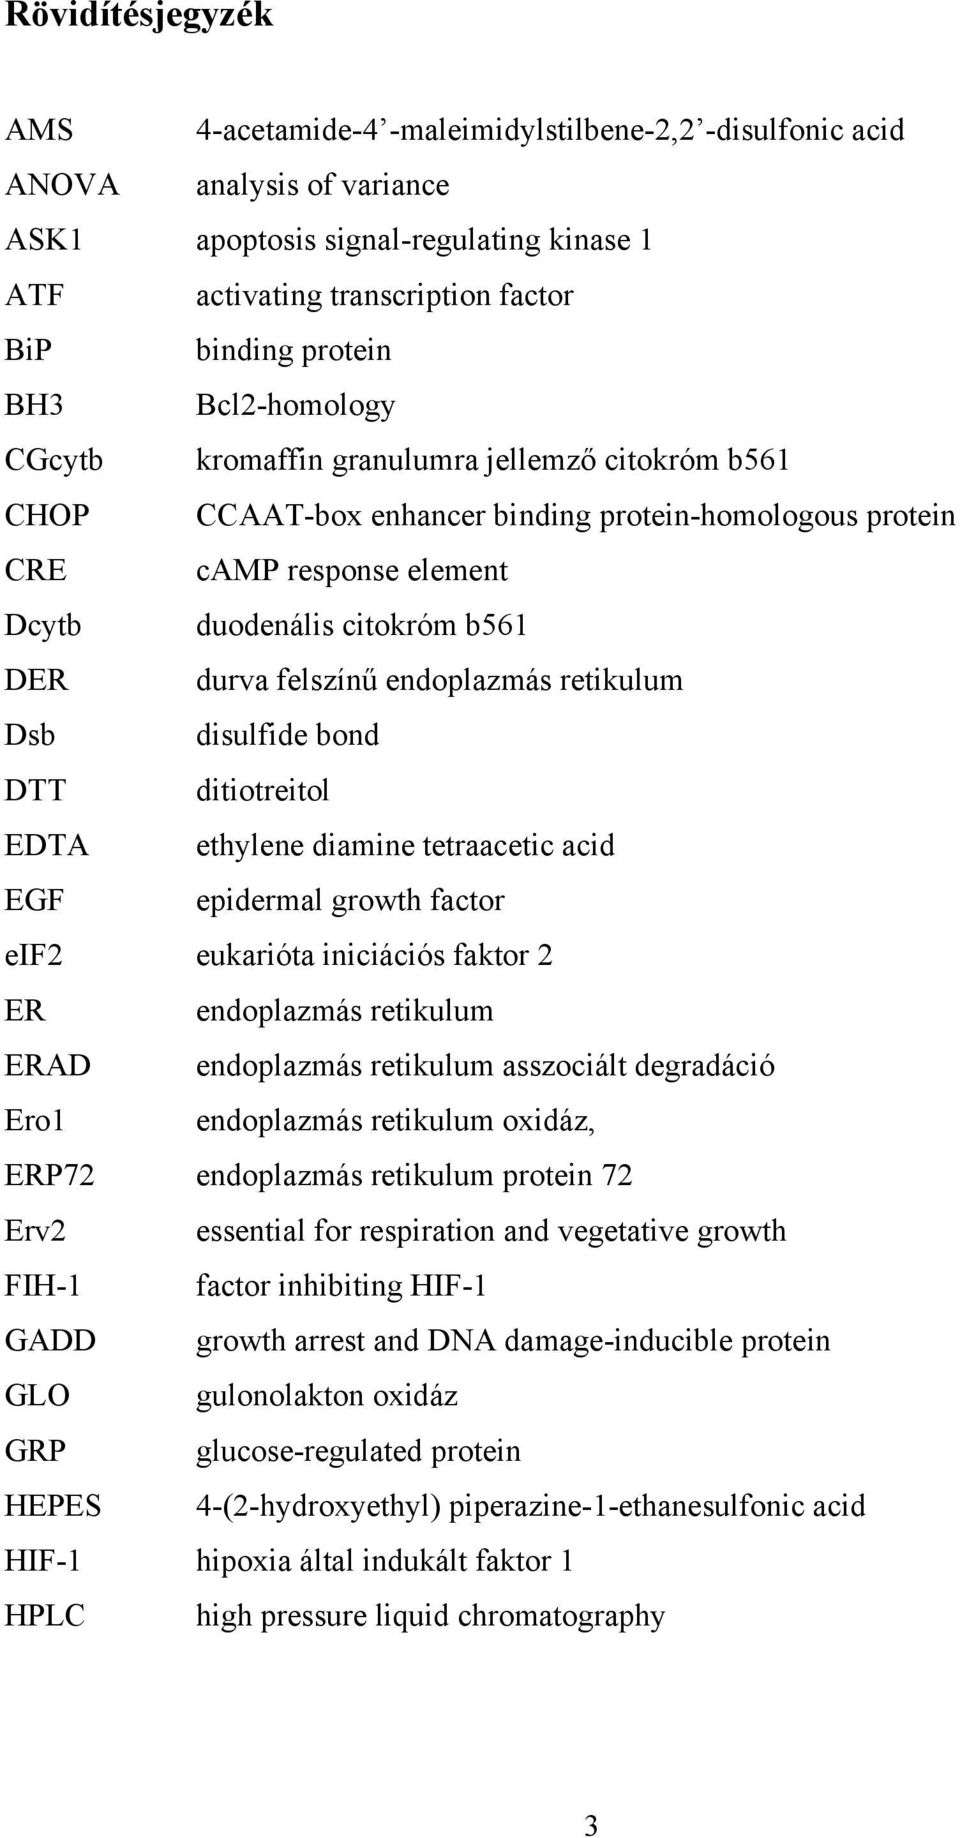 durva felszínű endoplazmás retikulum Dsb disulfide bond DTT ditiotreitol EDTA ethylene diamine tetraacetic acid EGF epidermal growth factor eif2 eukarióta iniciációs faktor 2 ER endoplazmás retikulum